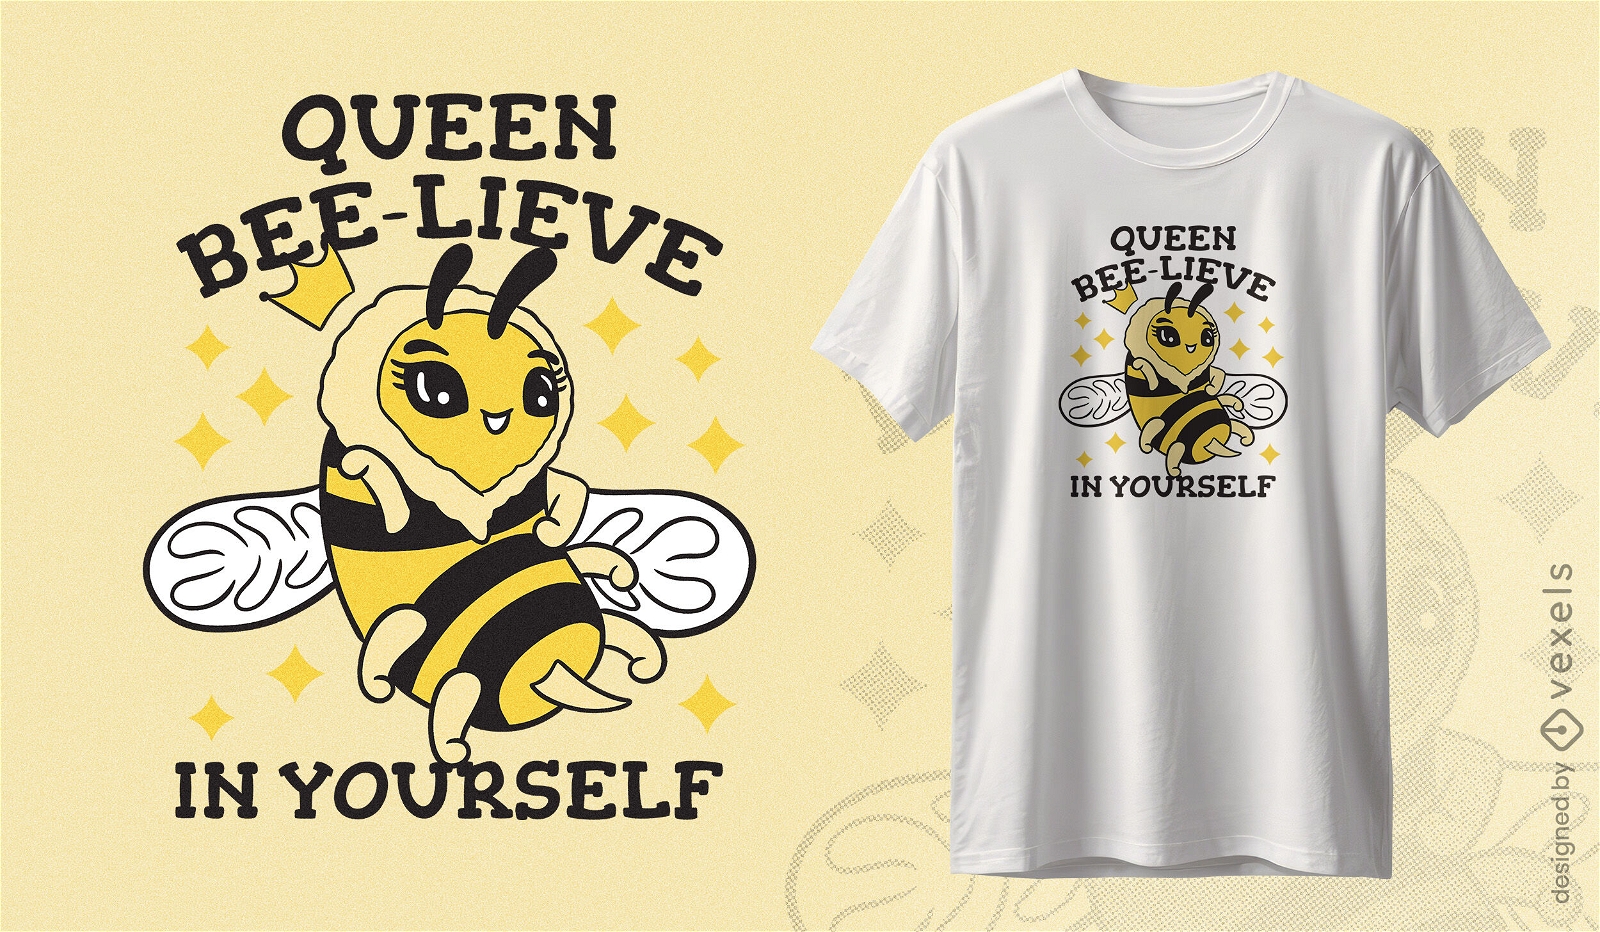 Queen bee positive affirmation t-shirt design